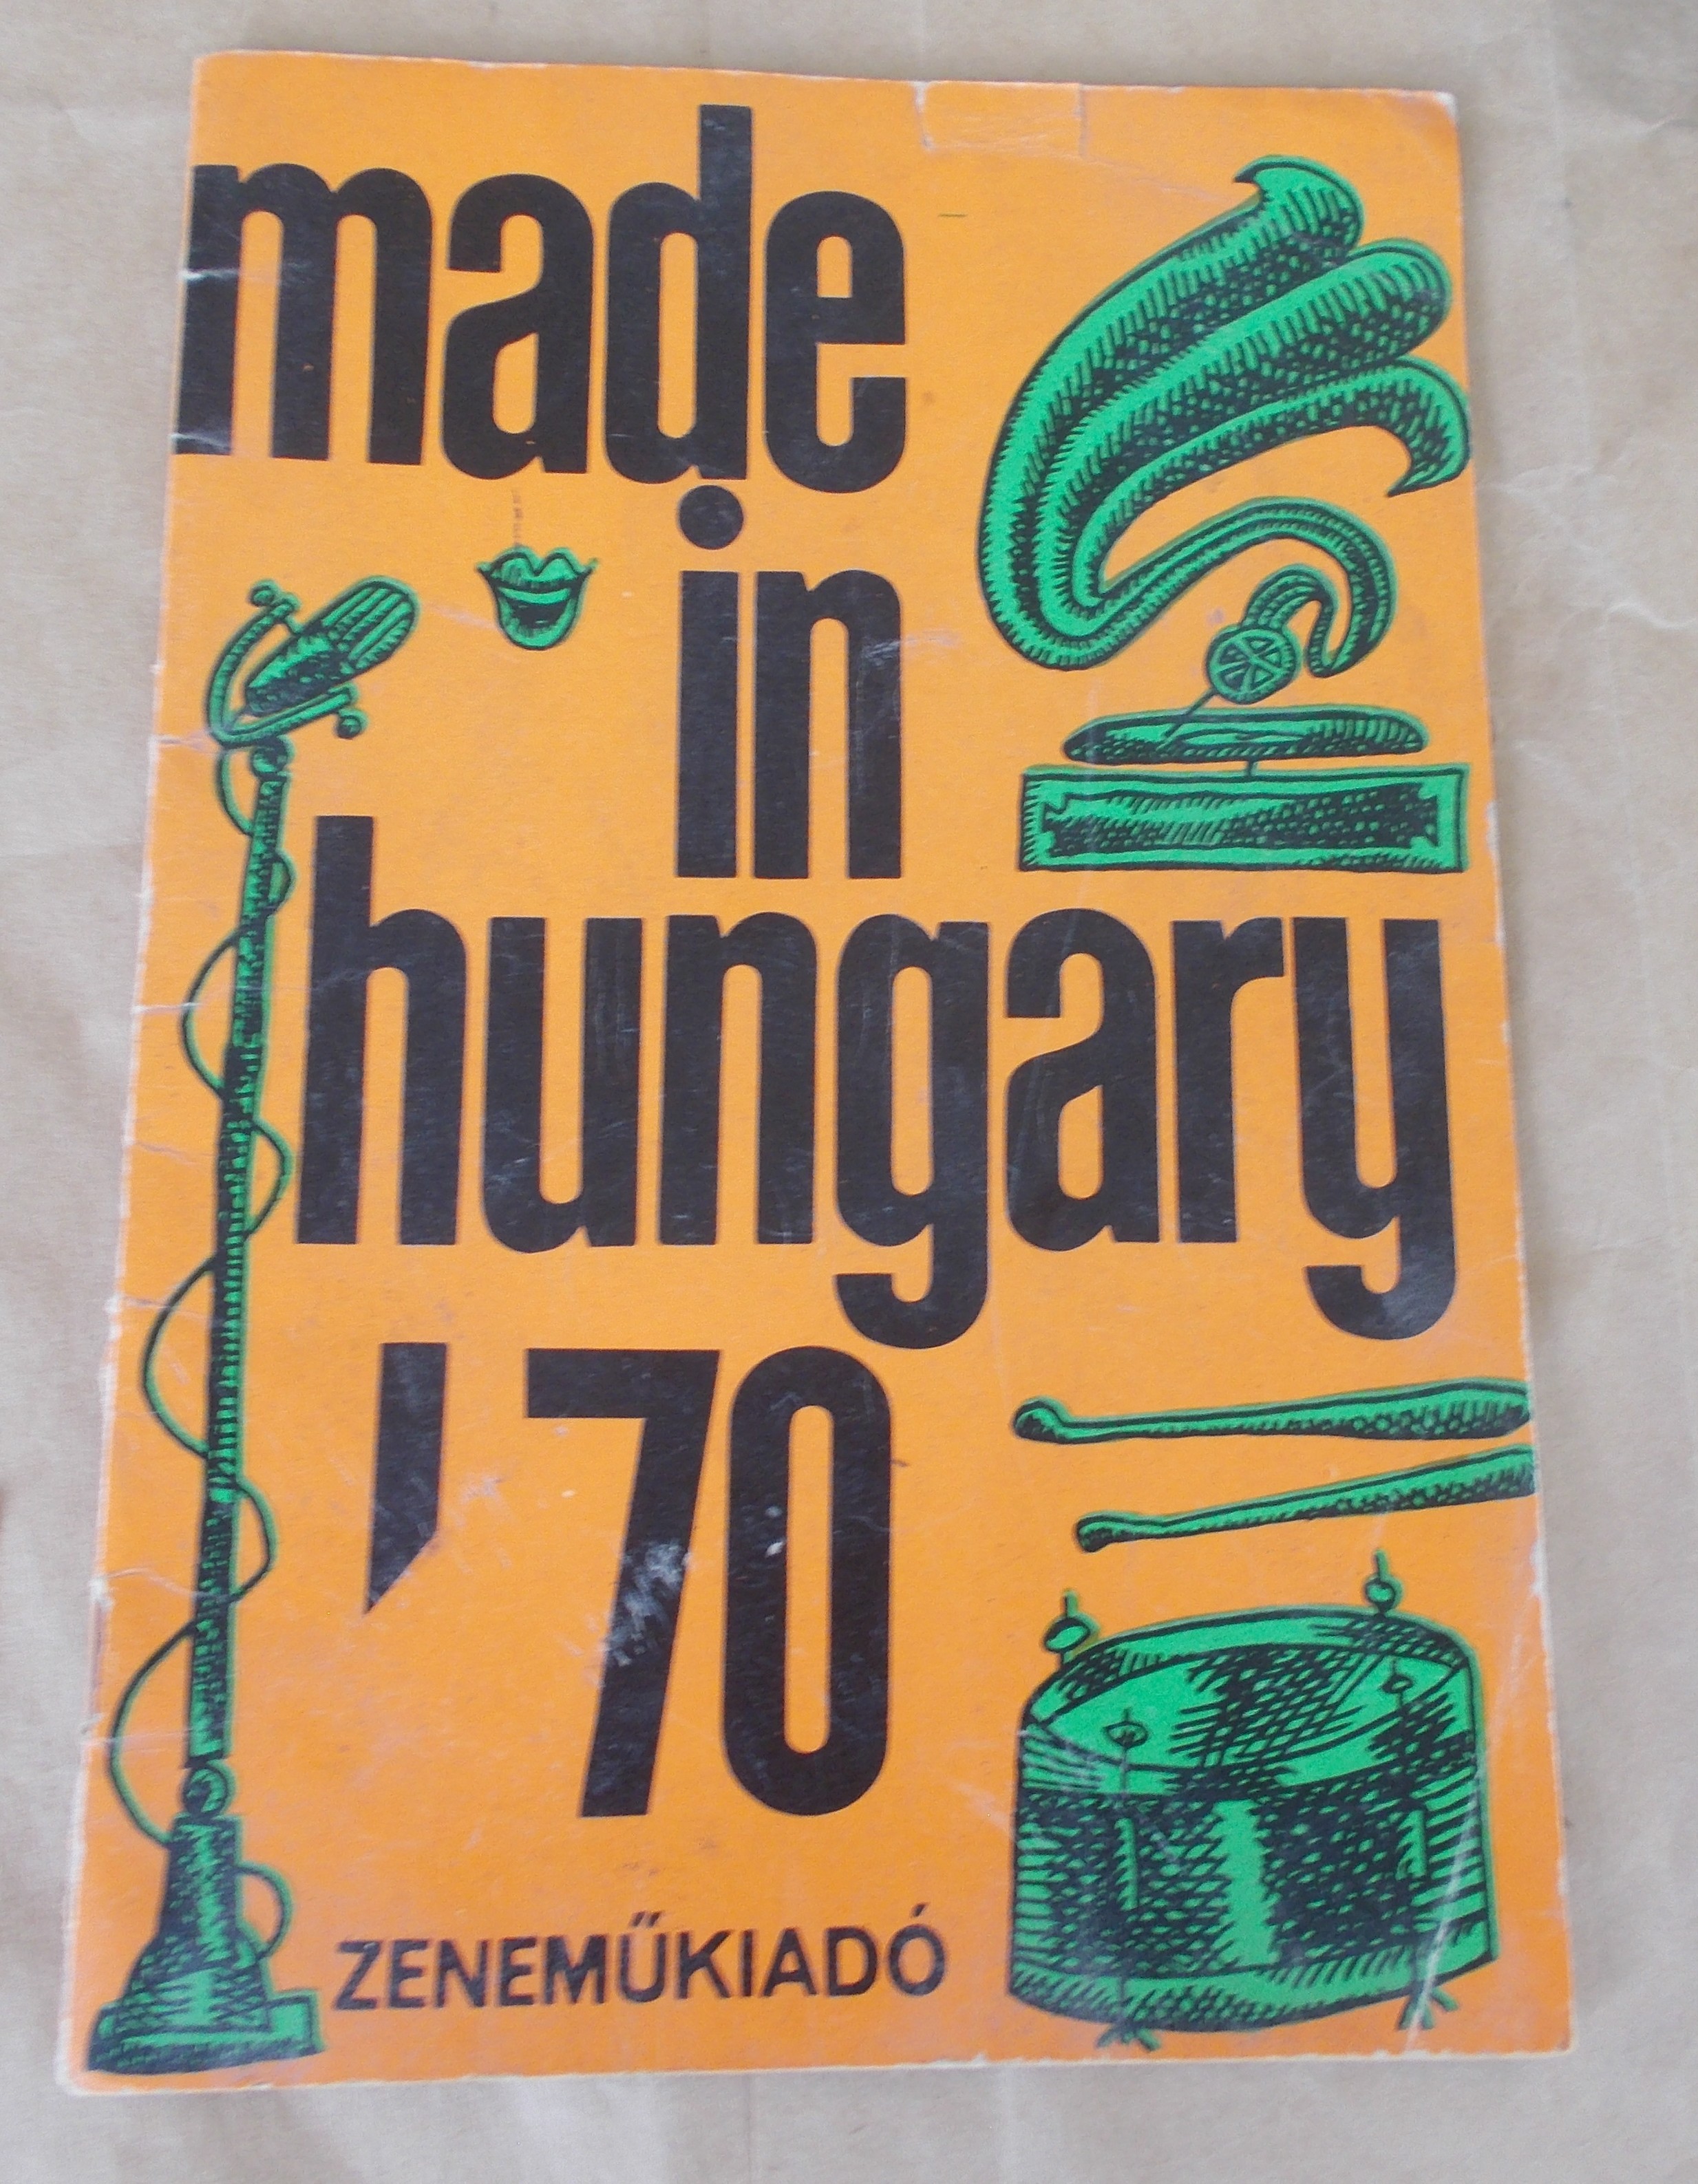 Made in hungary kottás füzet az 1970

Made in hunagry kottás füzet az 1970-es évekből


